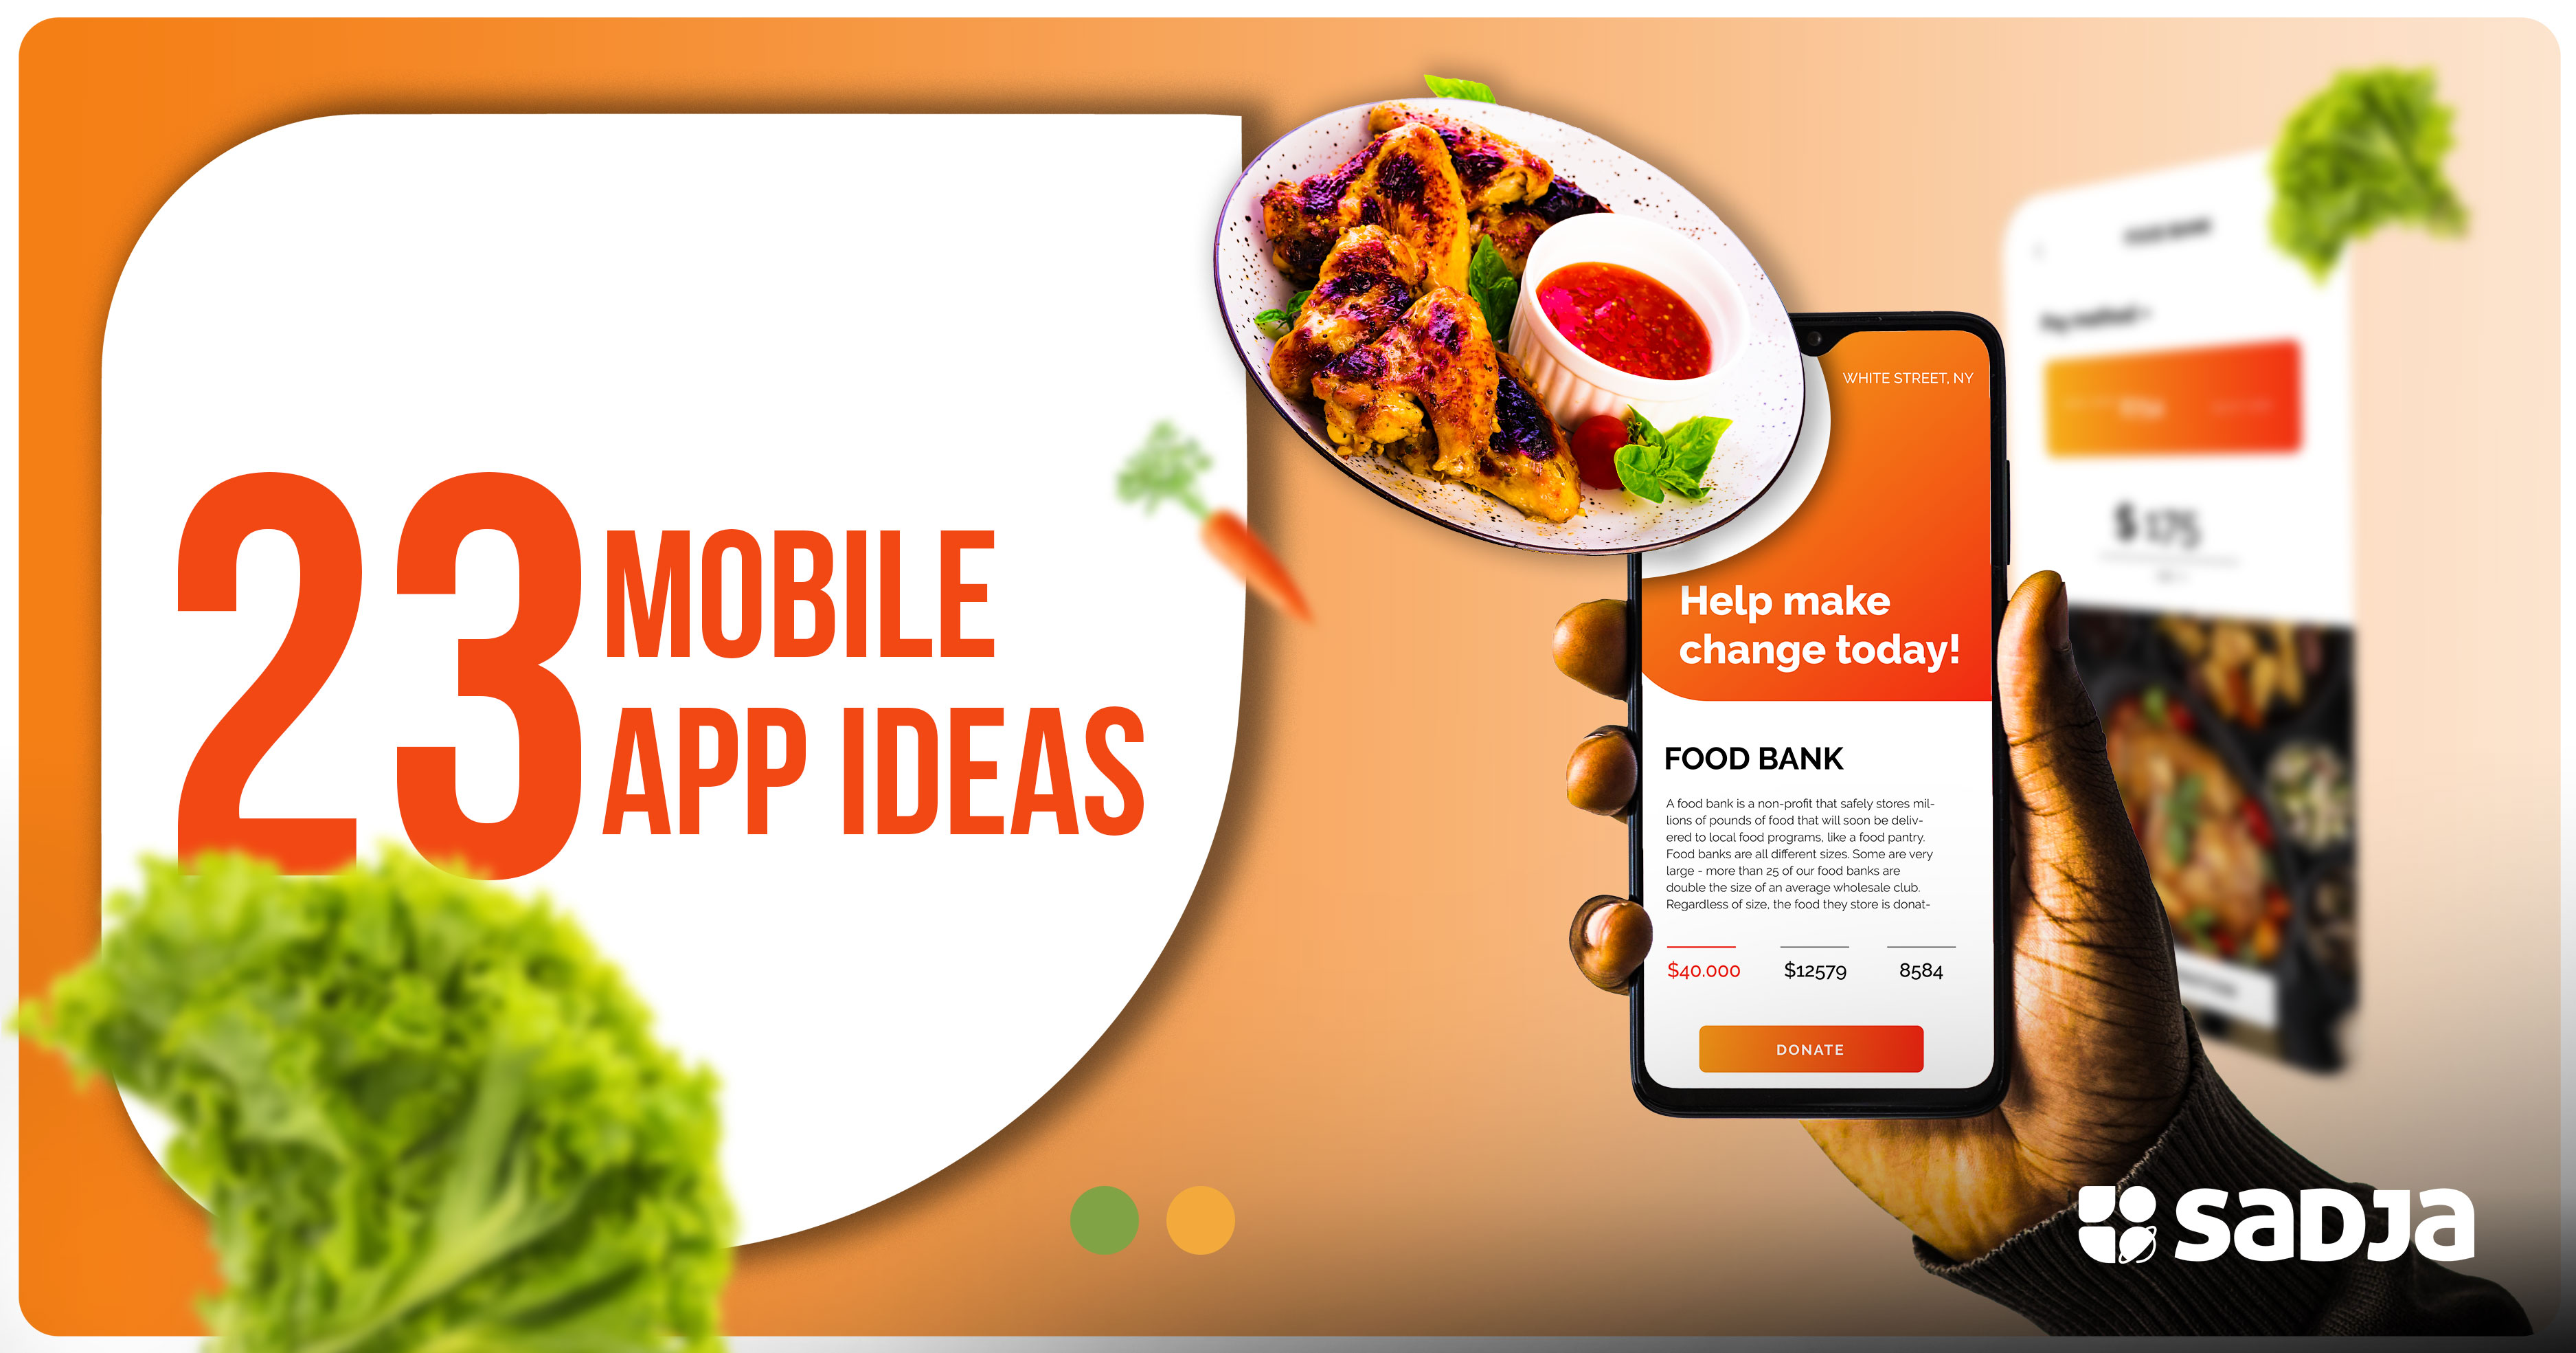 Mobile app ideas in Uganda